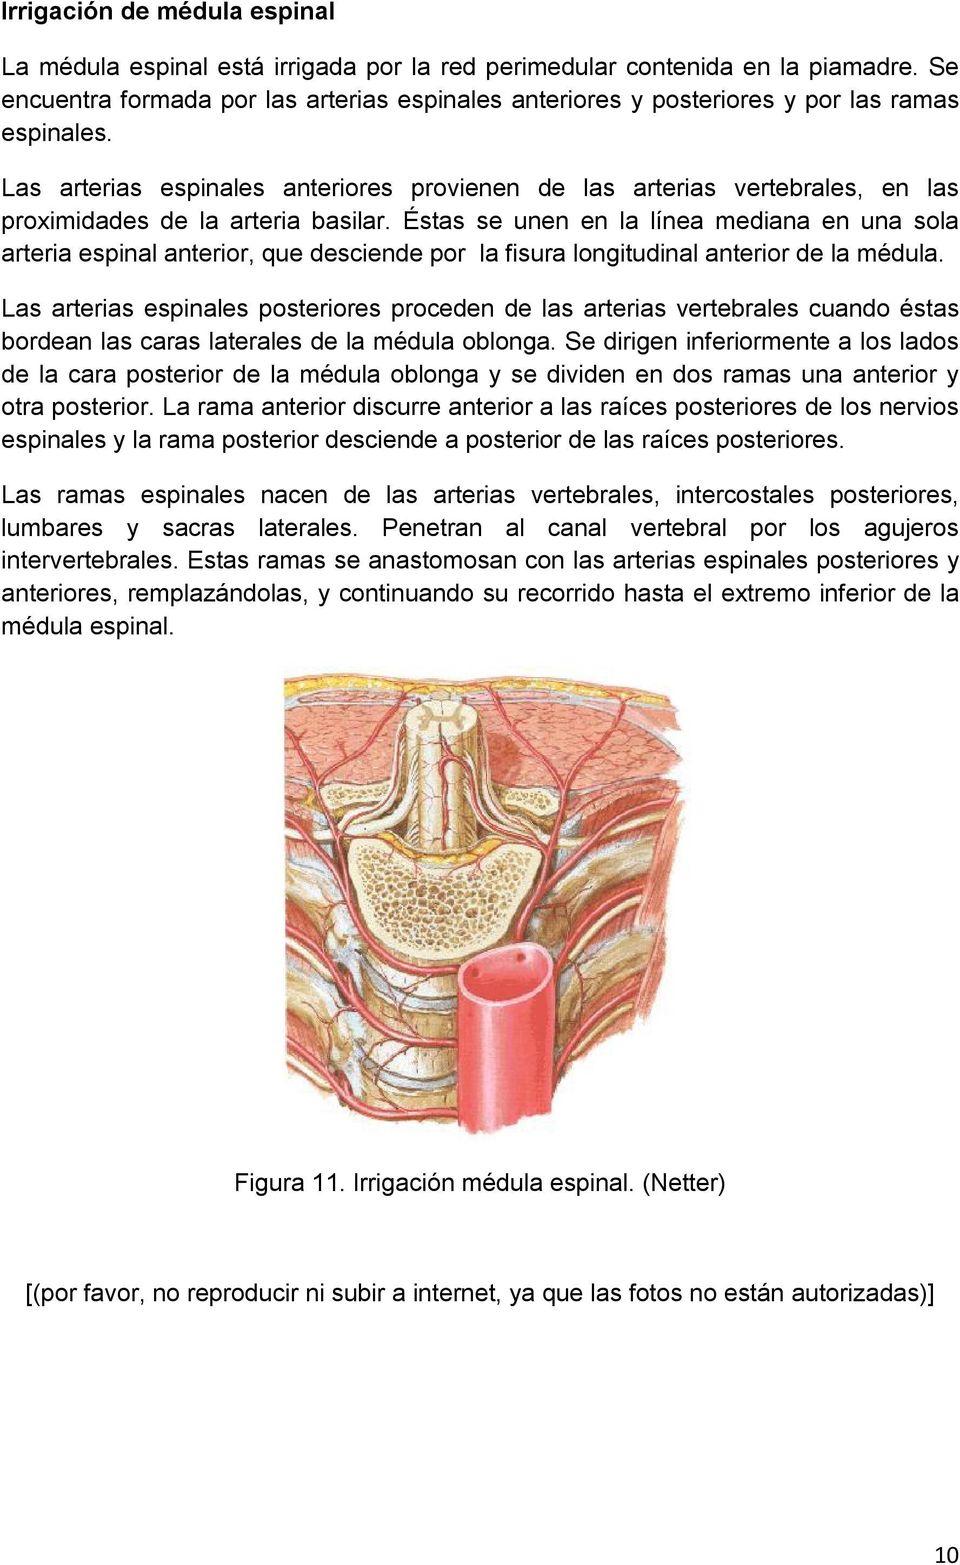 Las arterias espinales anteriores provienen de las arterias vertebrales, en las proximidades de la arteria basilar.